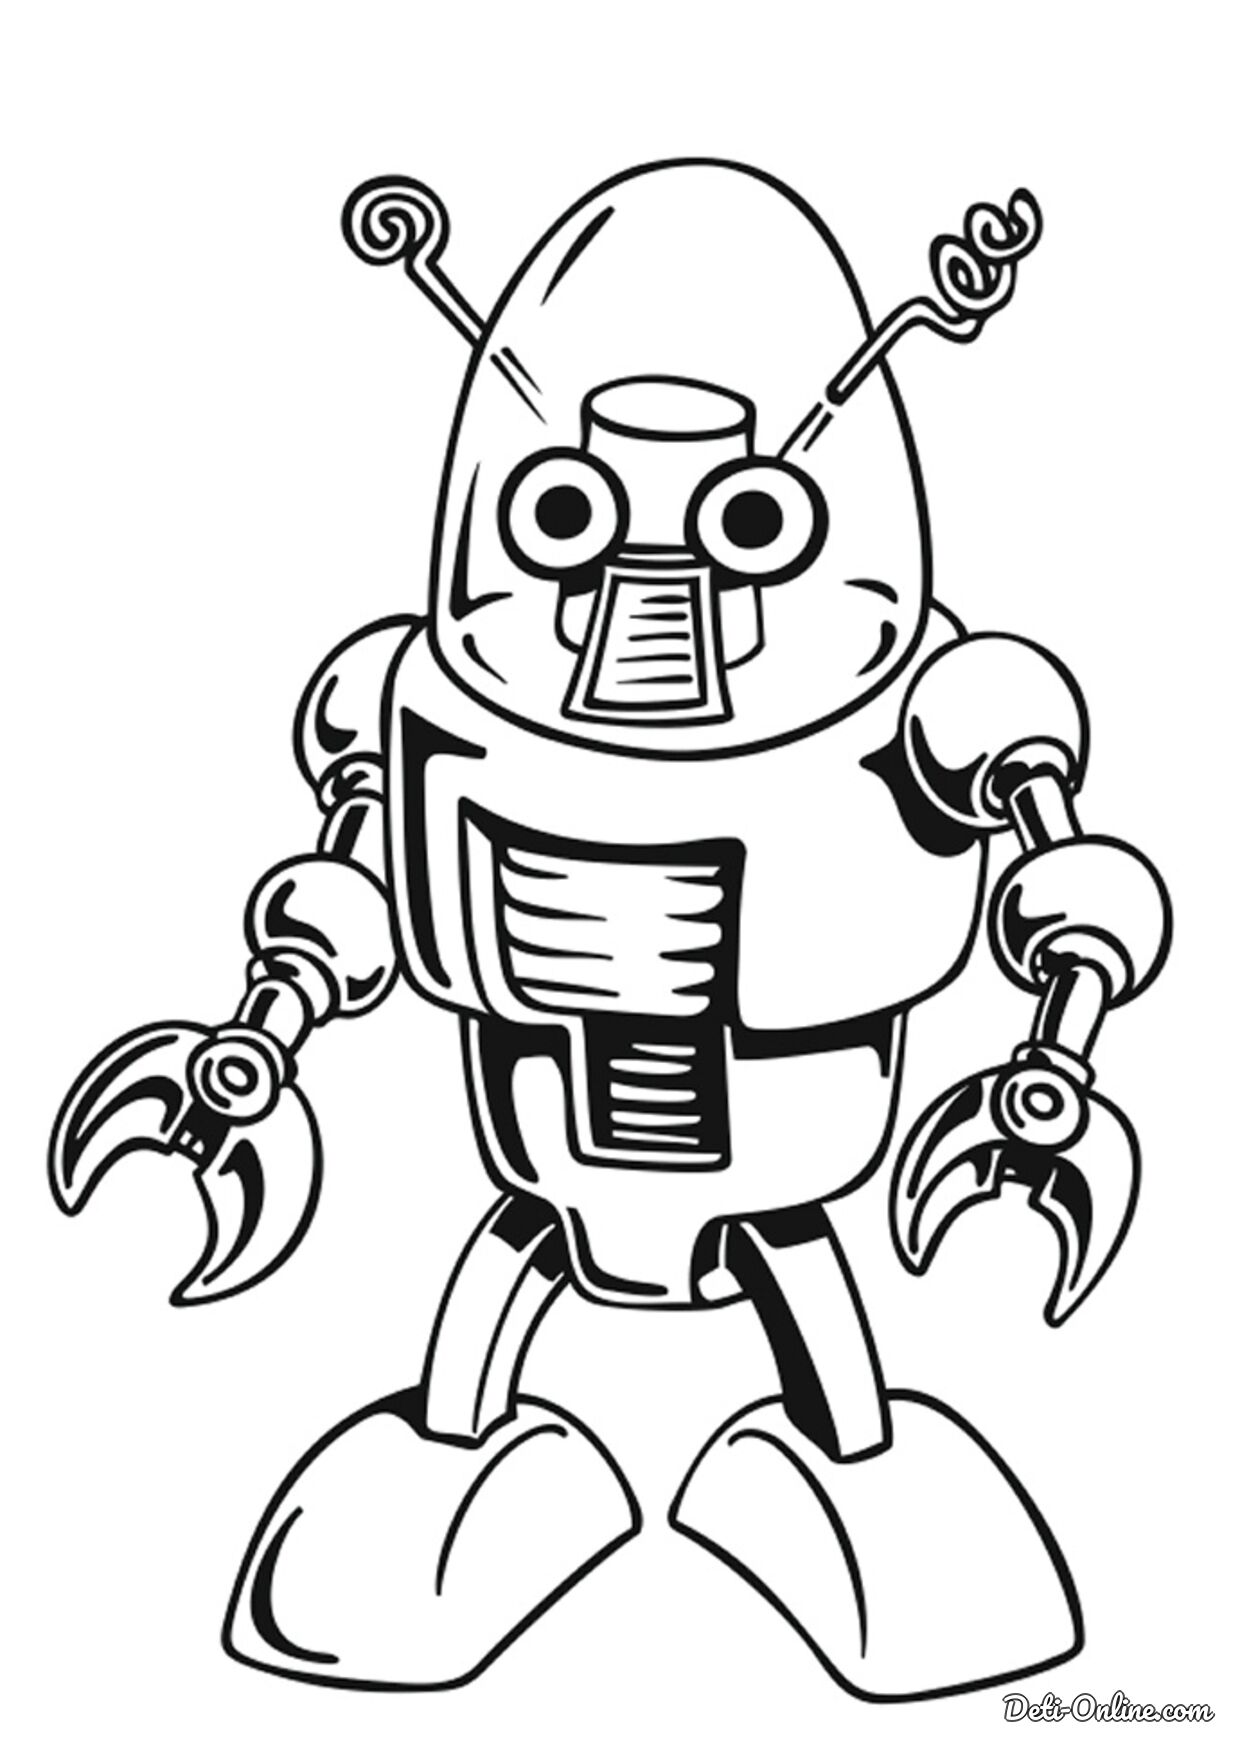 Раскраска робот ♥ Скачать, Онлайн и Распечатать Бесплатно!